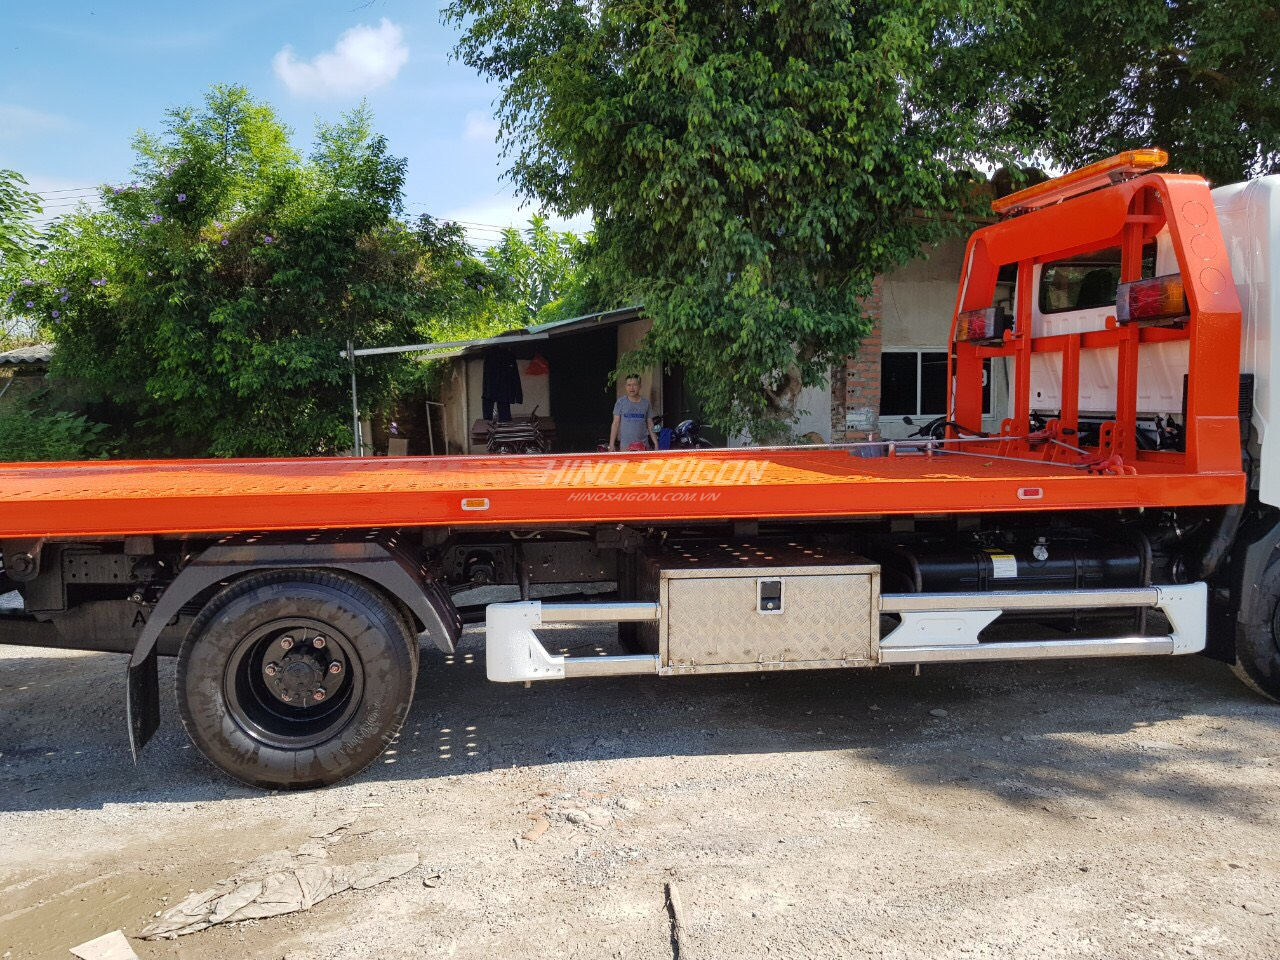 Hino XZU730L cứu hộ kéo chở xe tải trọng 3 tấn